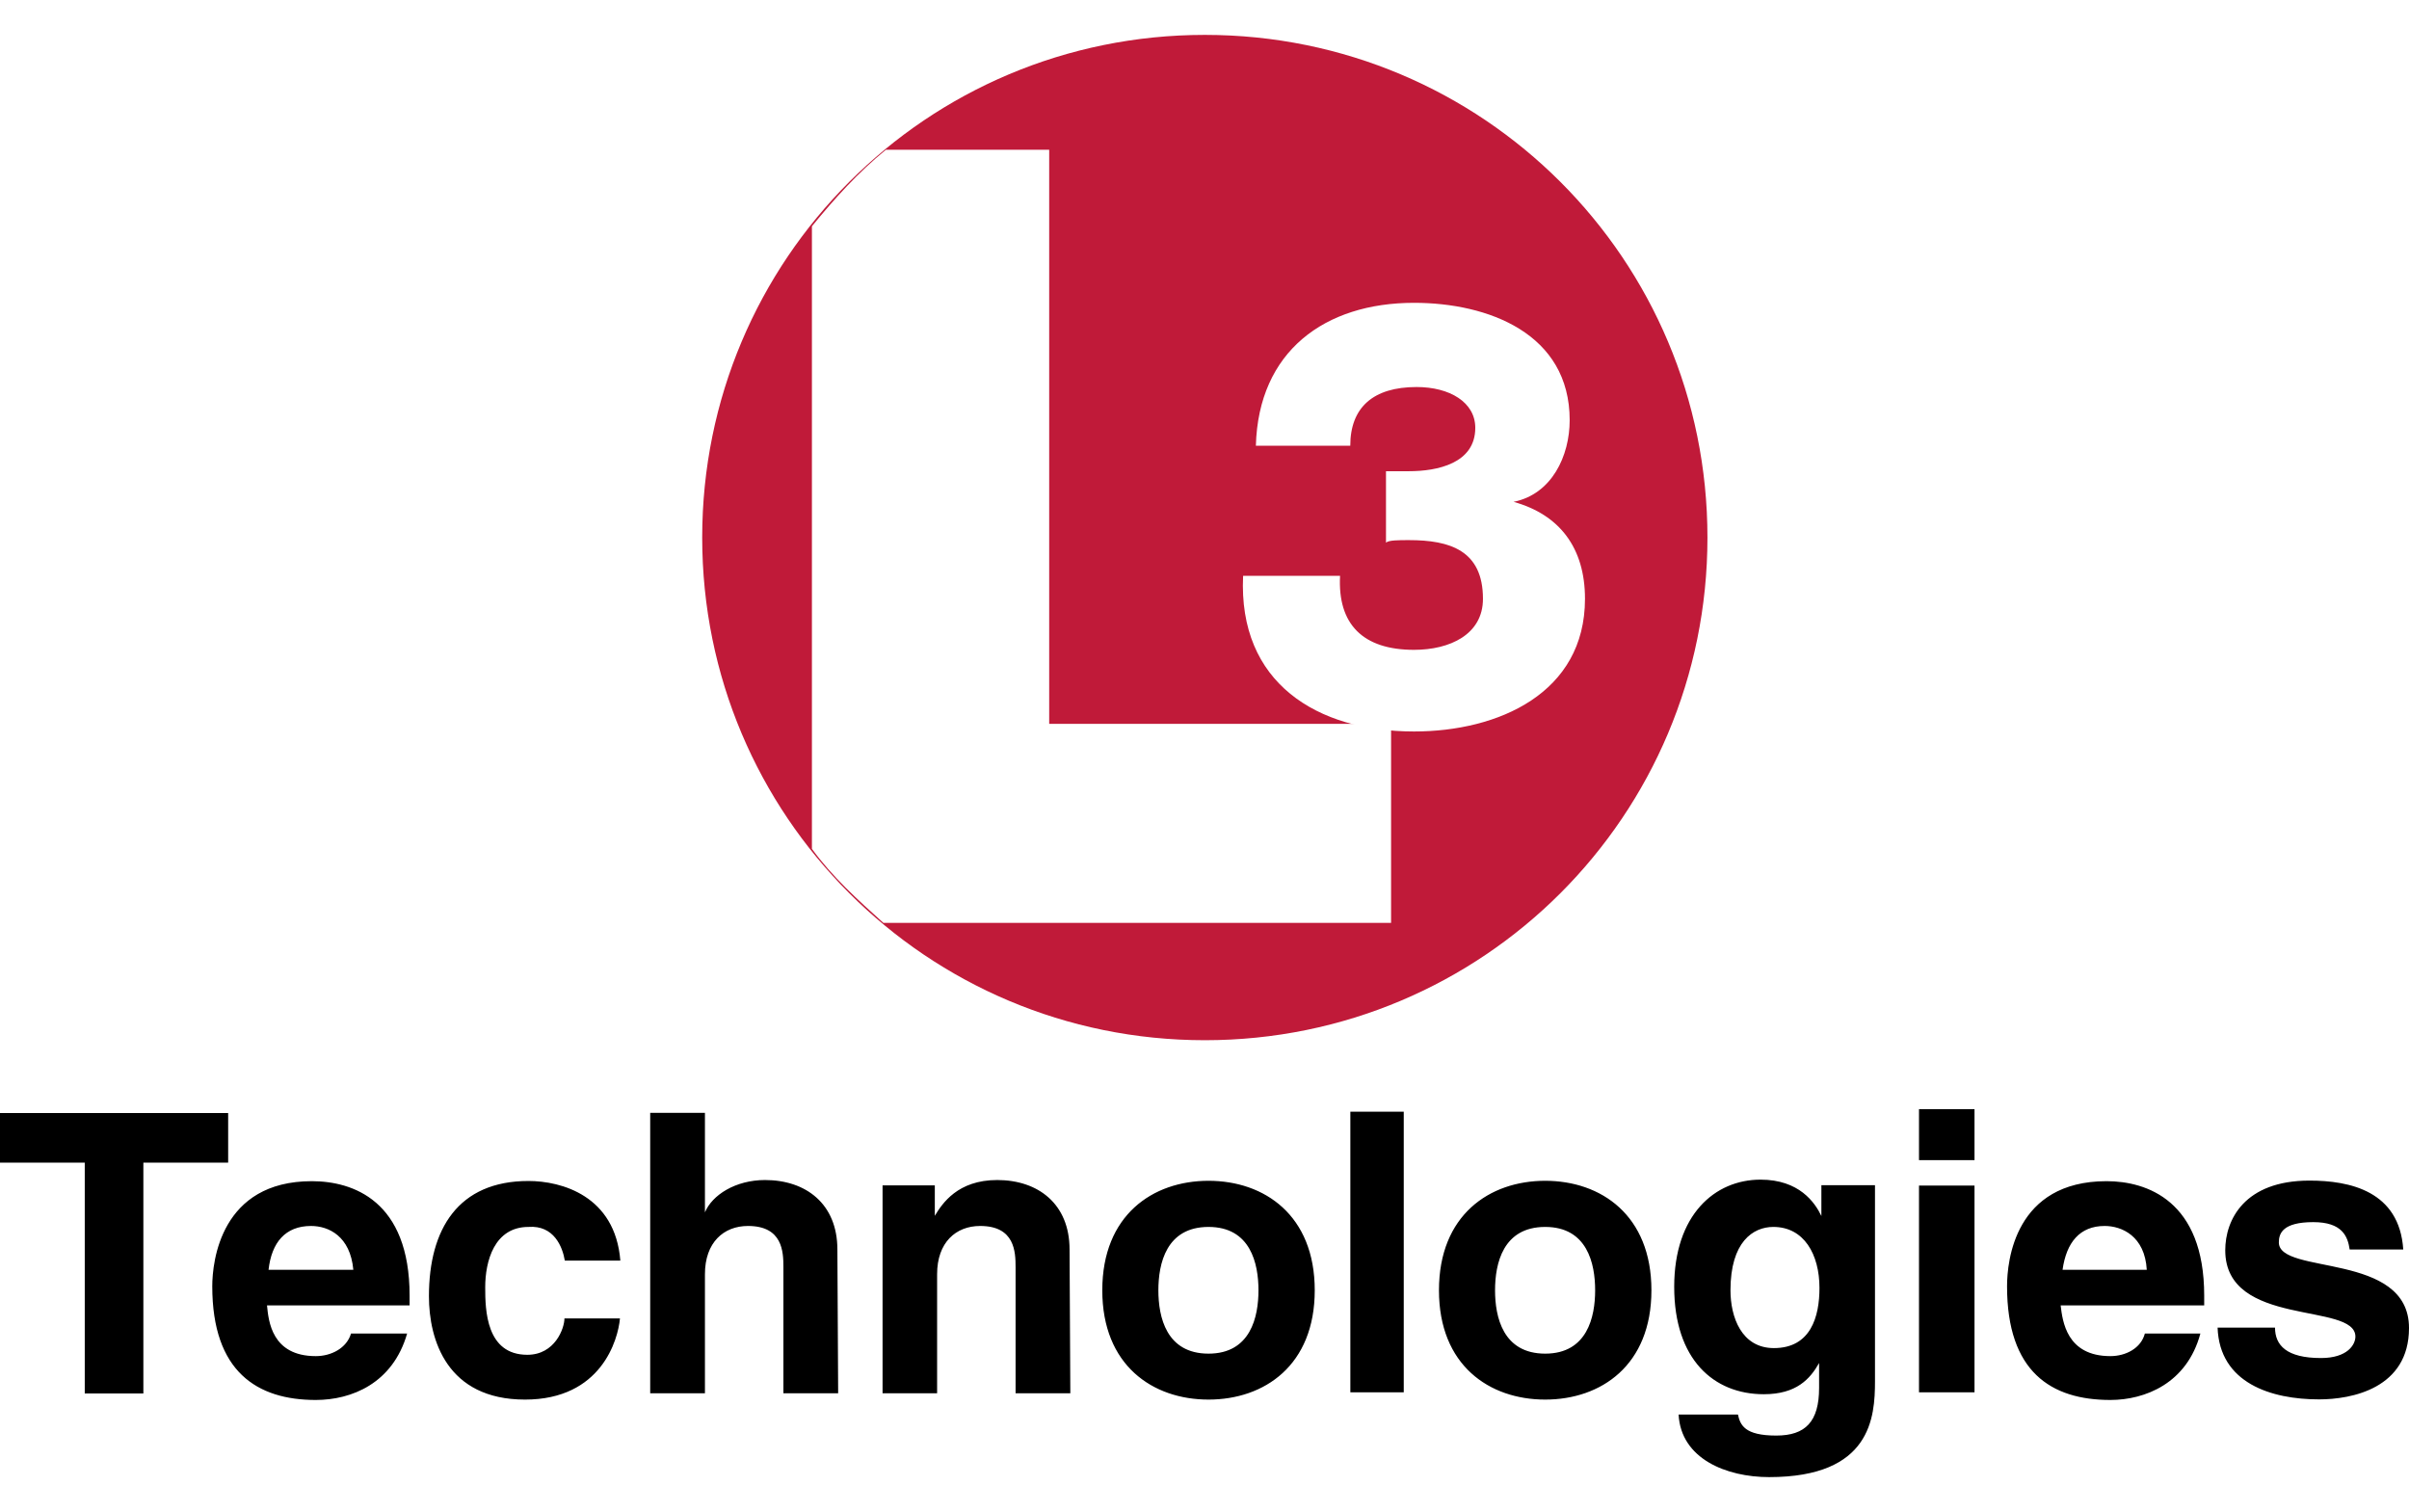 L3 Technologies logo colors